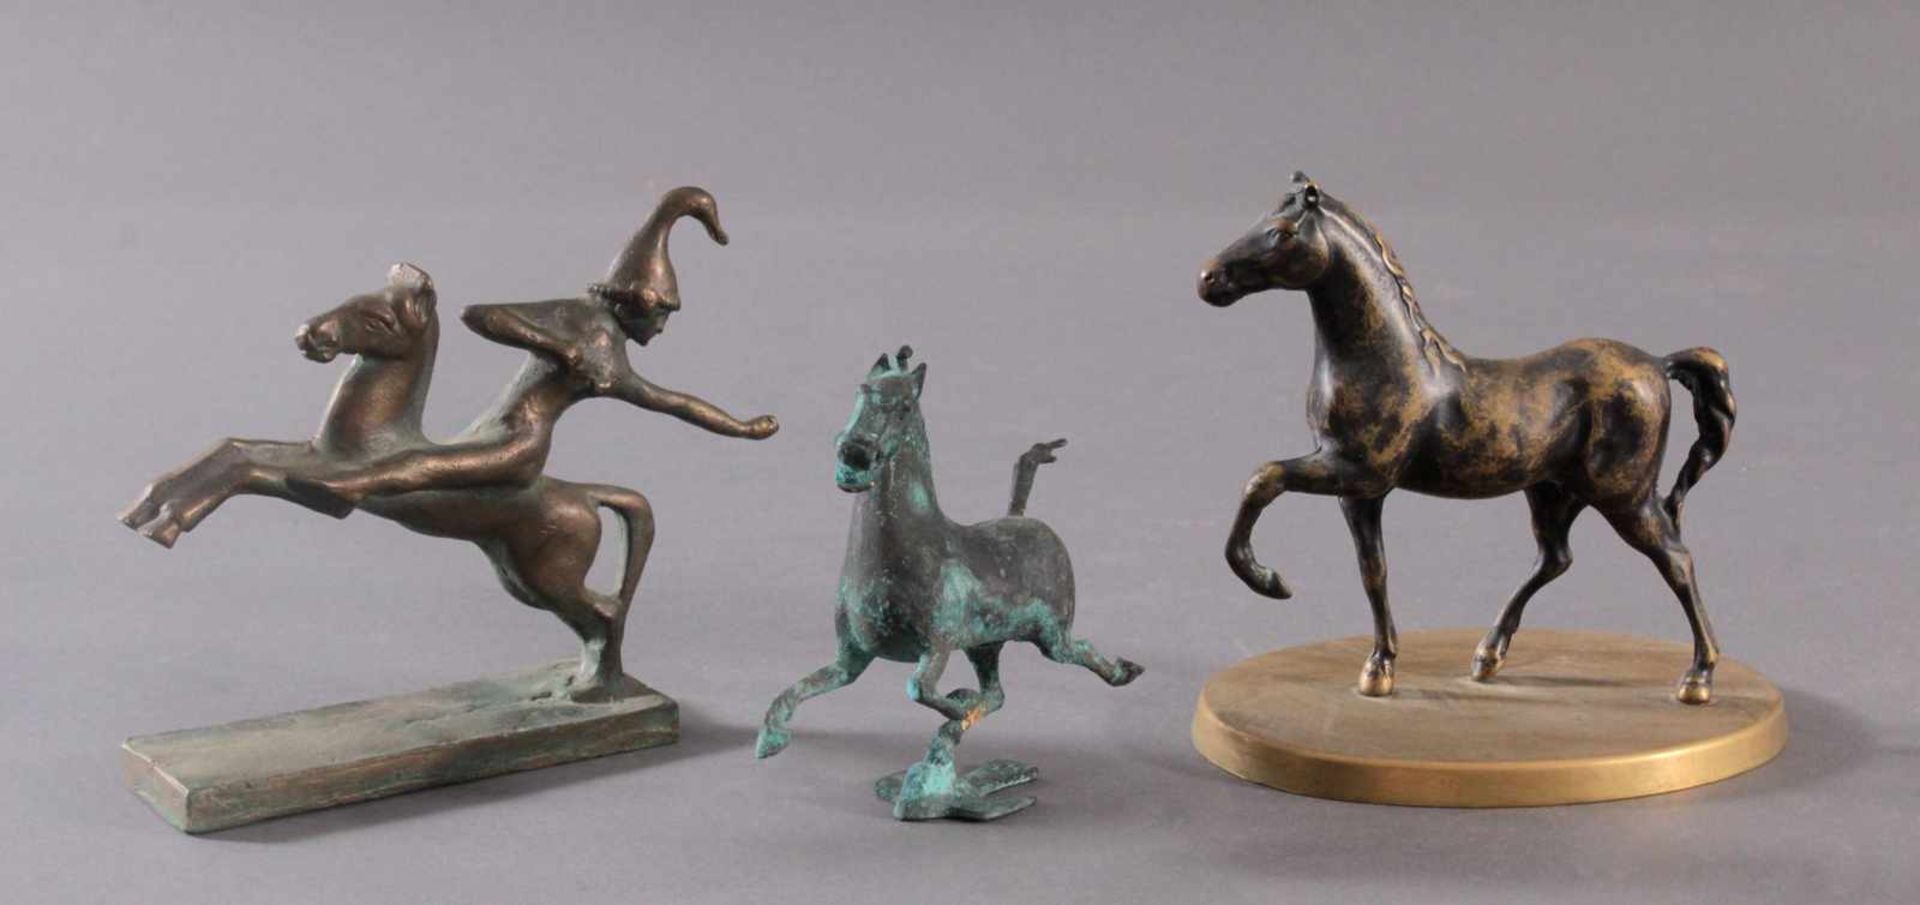 3 Pferdeskulpturen aus Bronze und MessingSkulptur auf ovalem Sockel mit bez. "Made in Italy", ca.